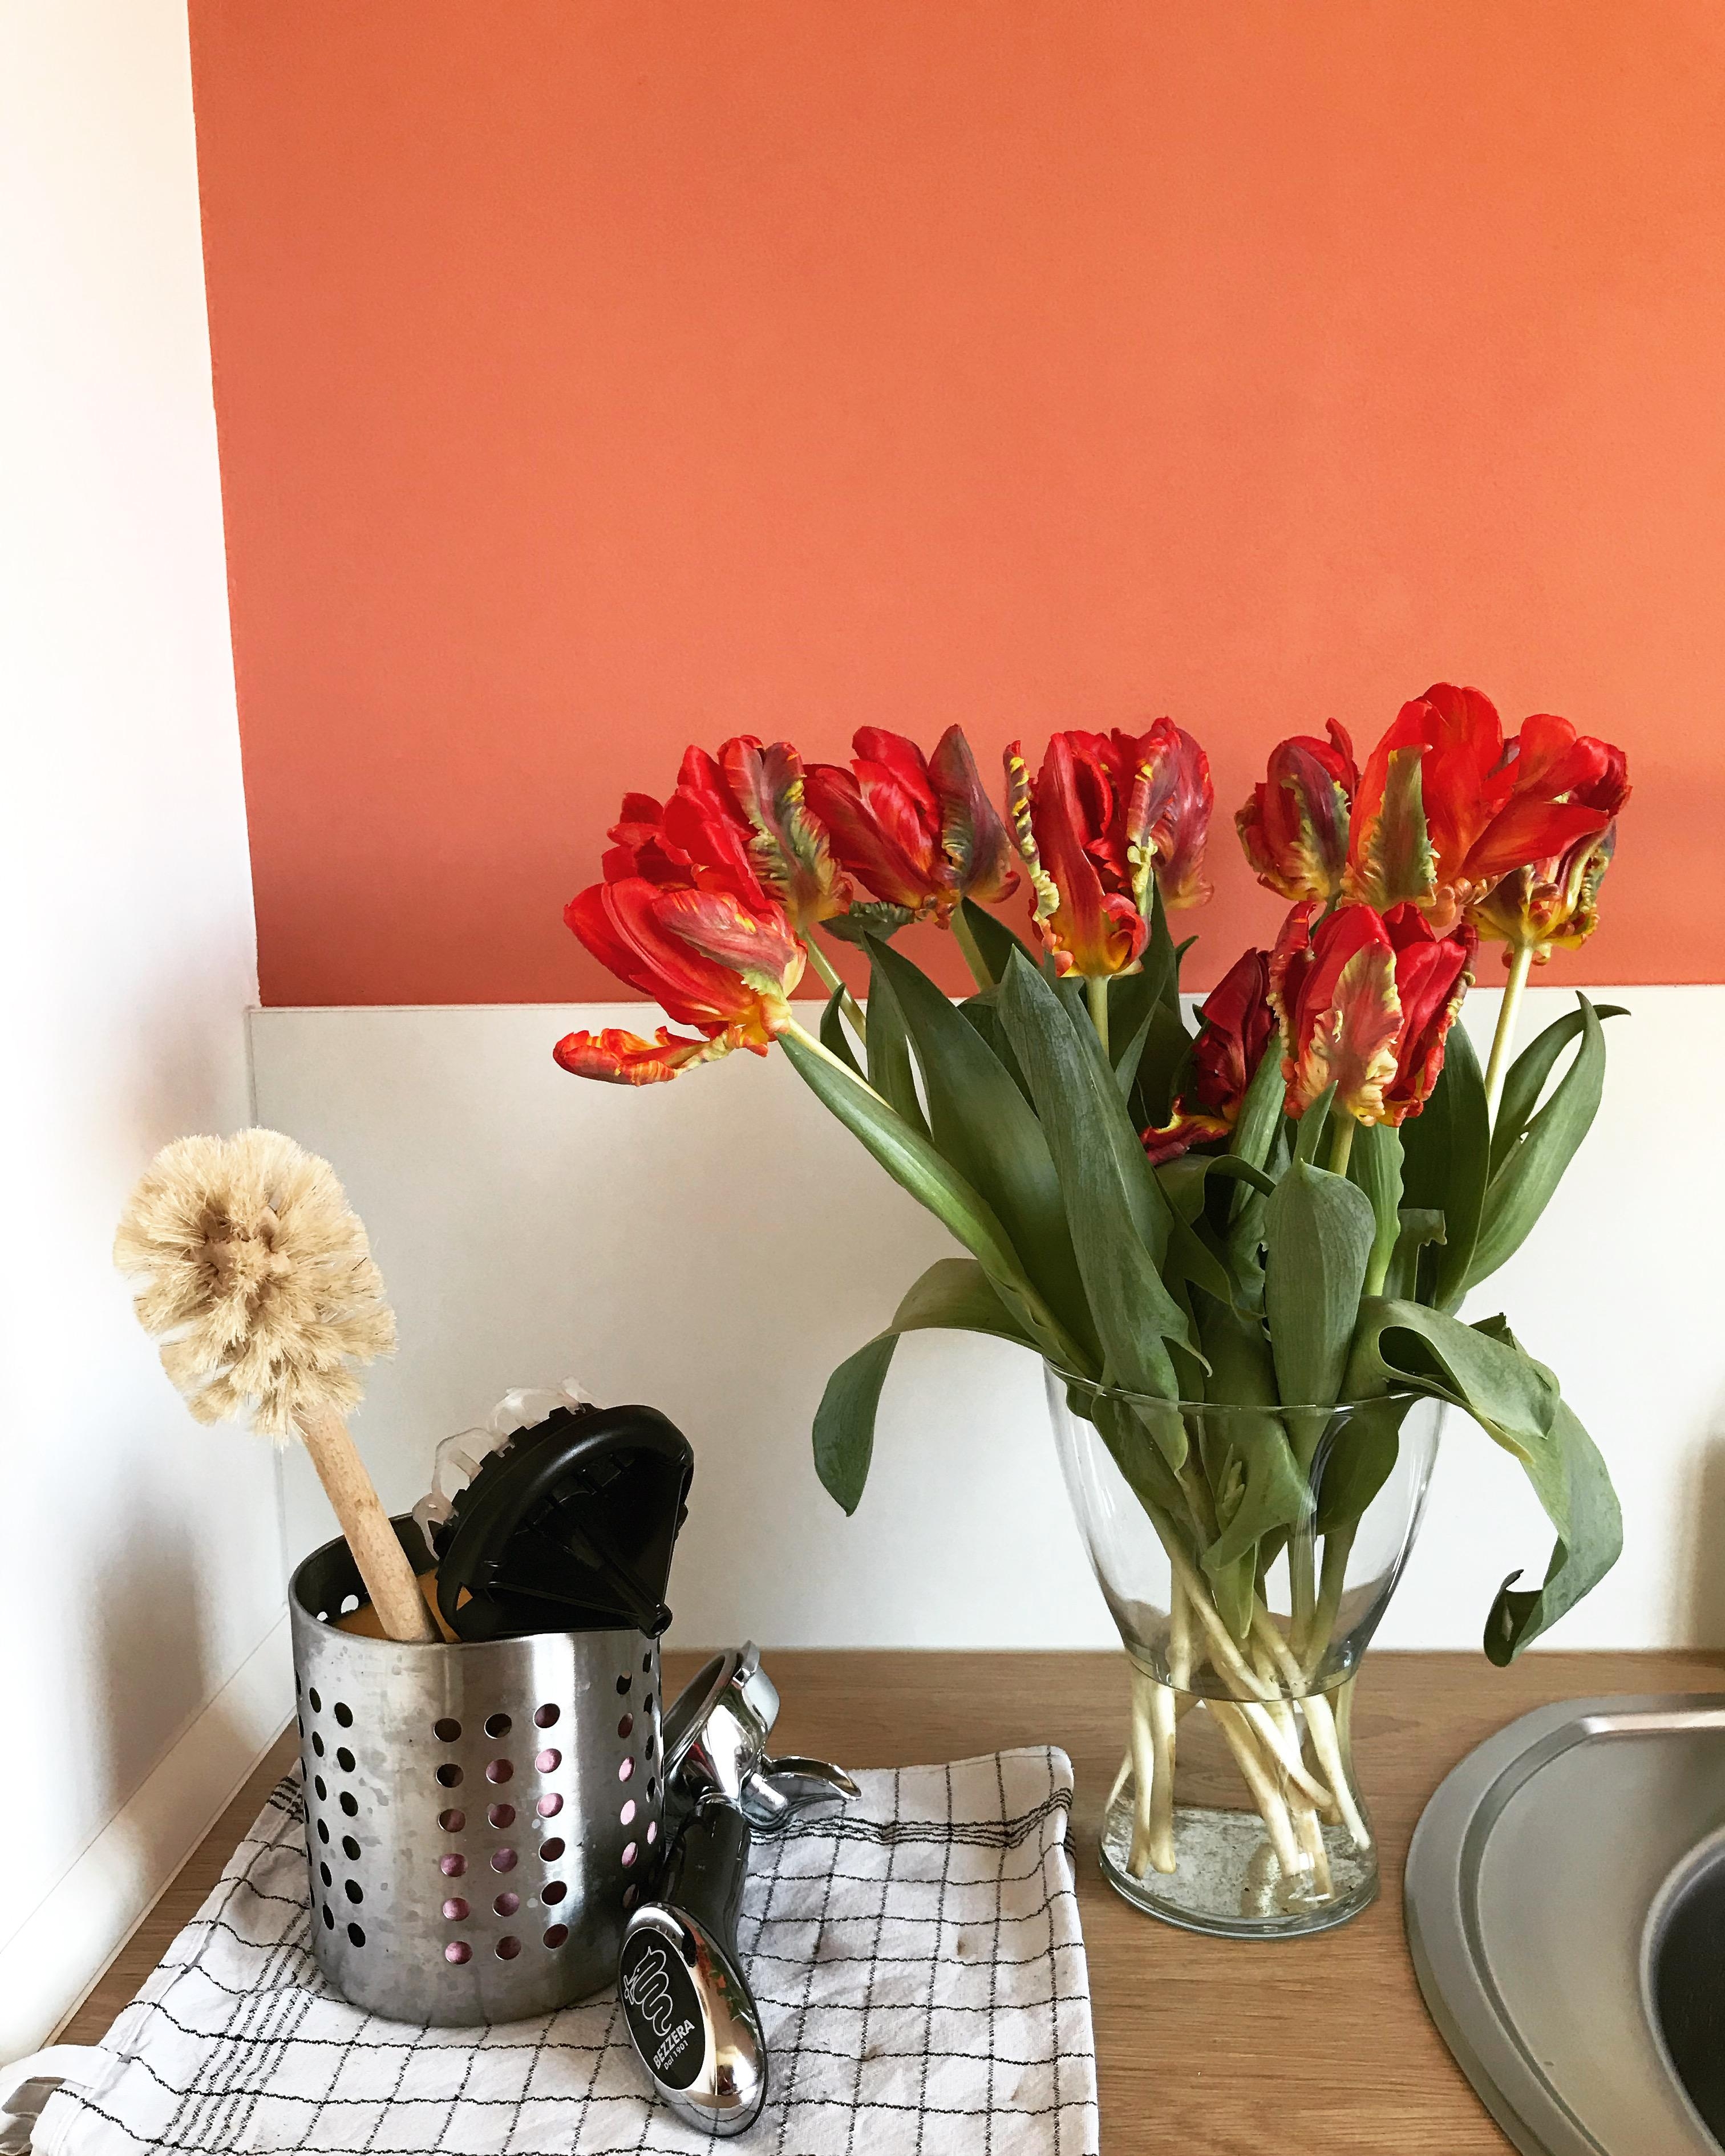 Kitchendetails. 🧡 ein paar frische Tulpen vor der neuen Wand 💕